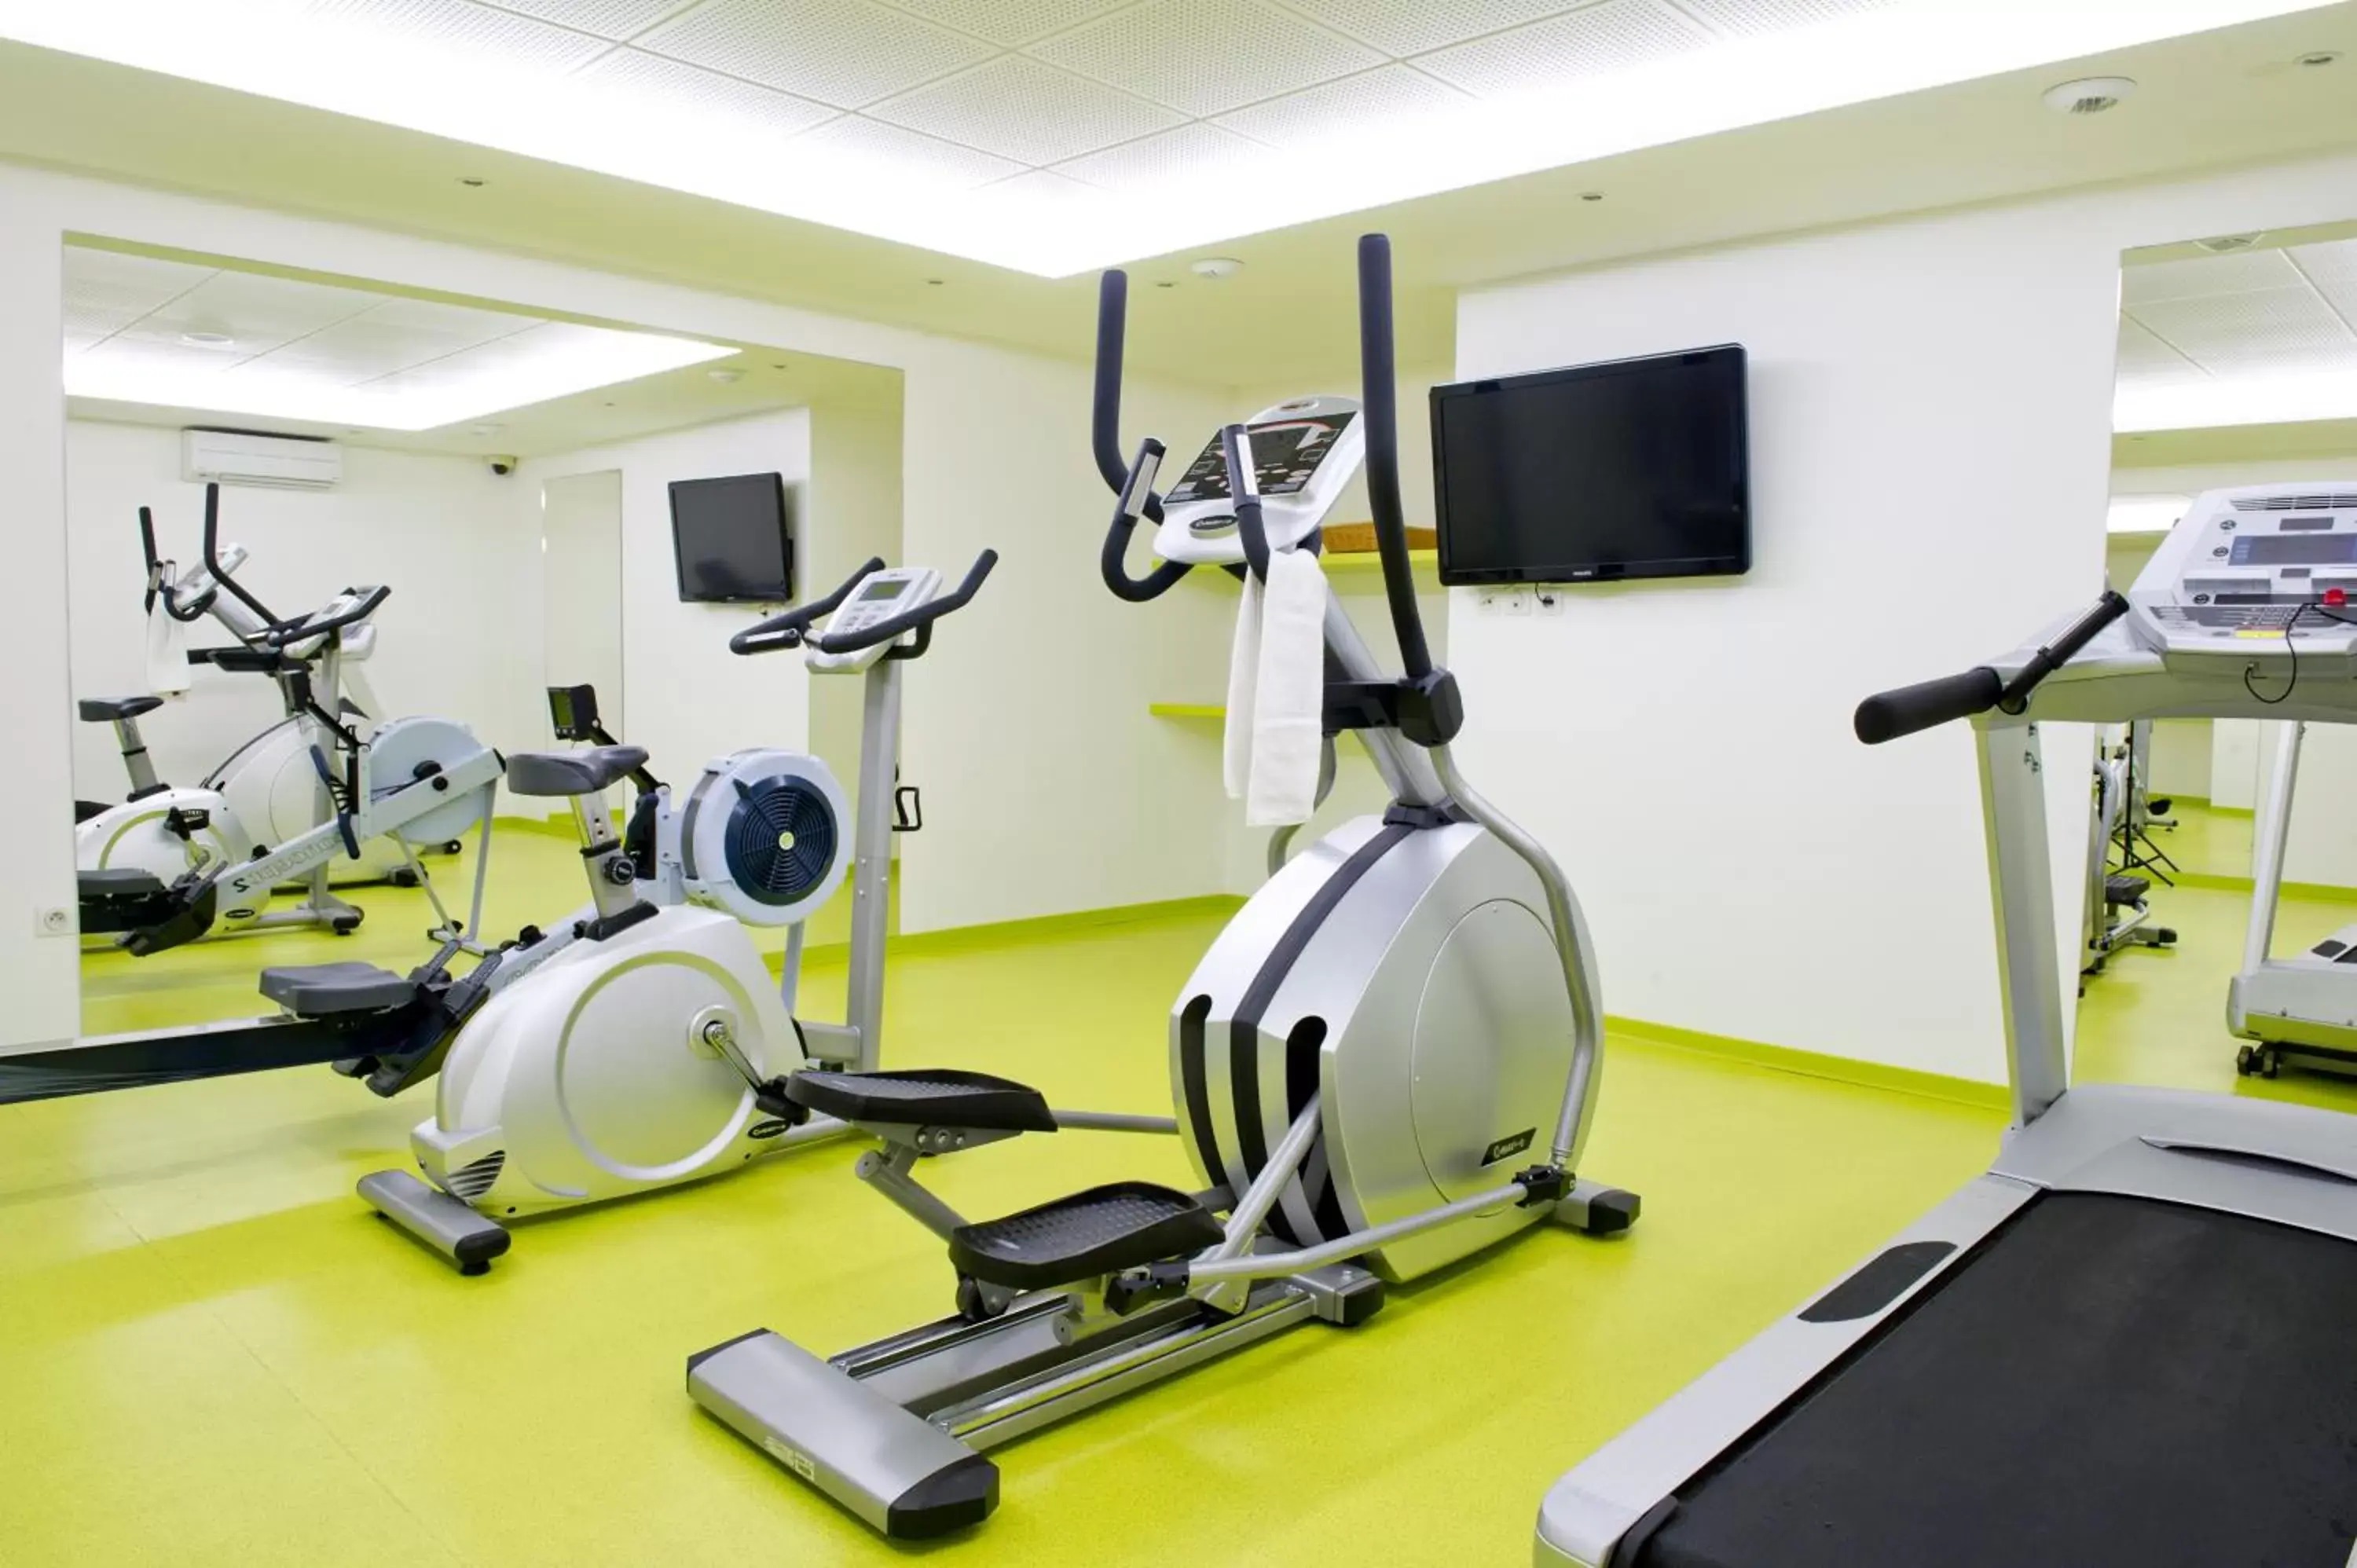 Fitness centre/facilities, Fitness Center/Facilities in Aparthotel Adagio Paris Vincennes